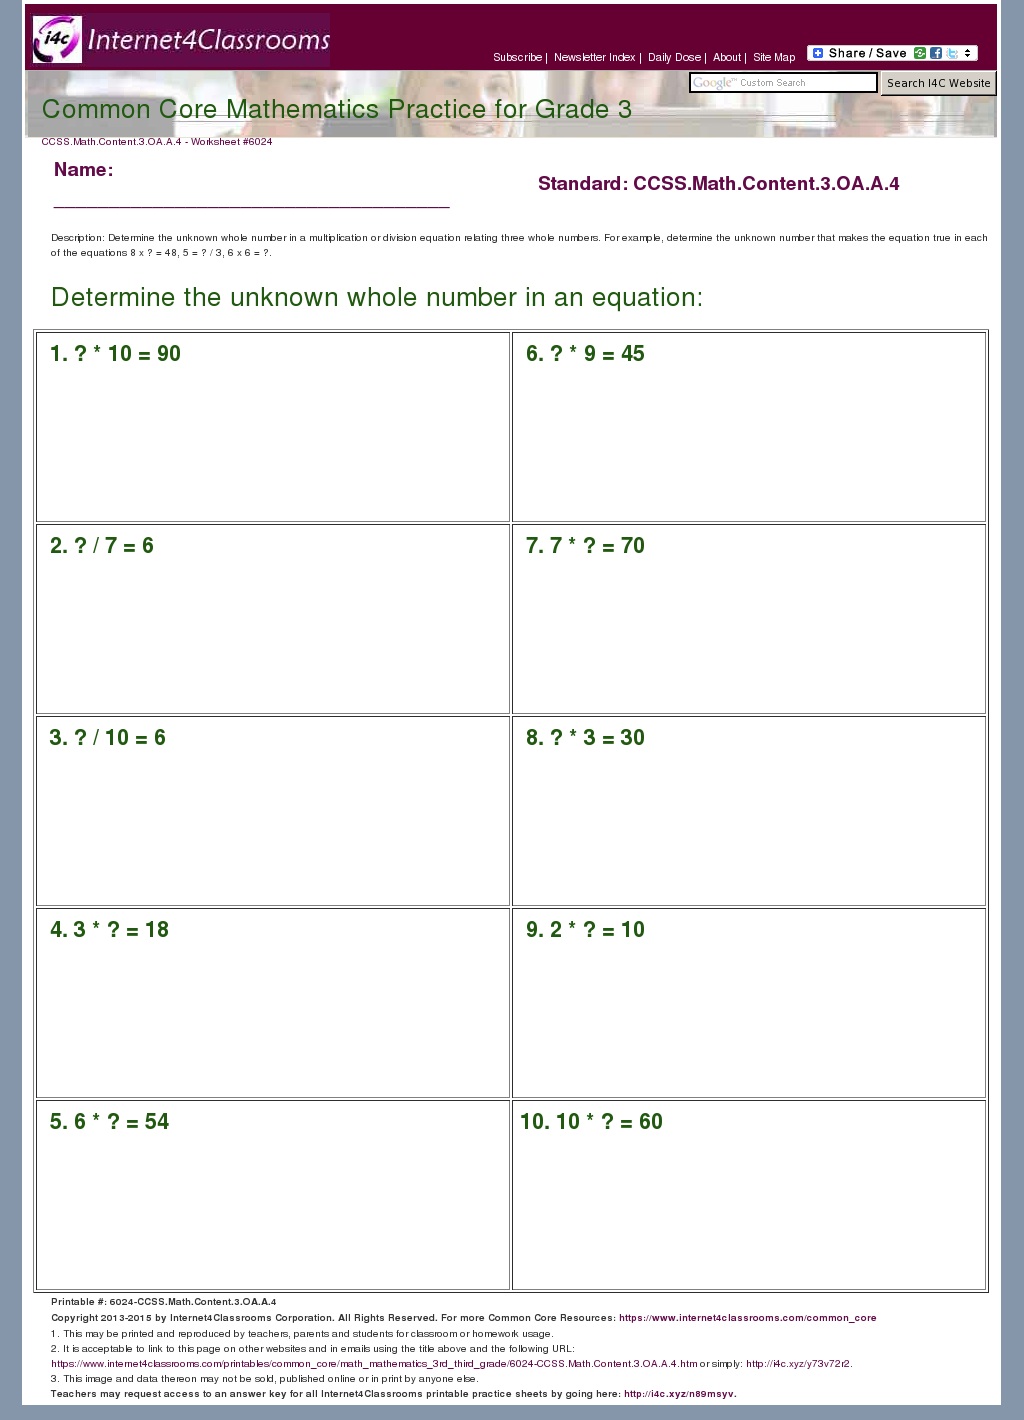 Description Download Worksheet 6024 CCSS Math Content 3 OA A 4